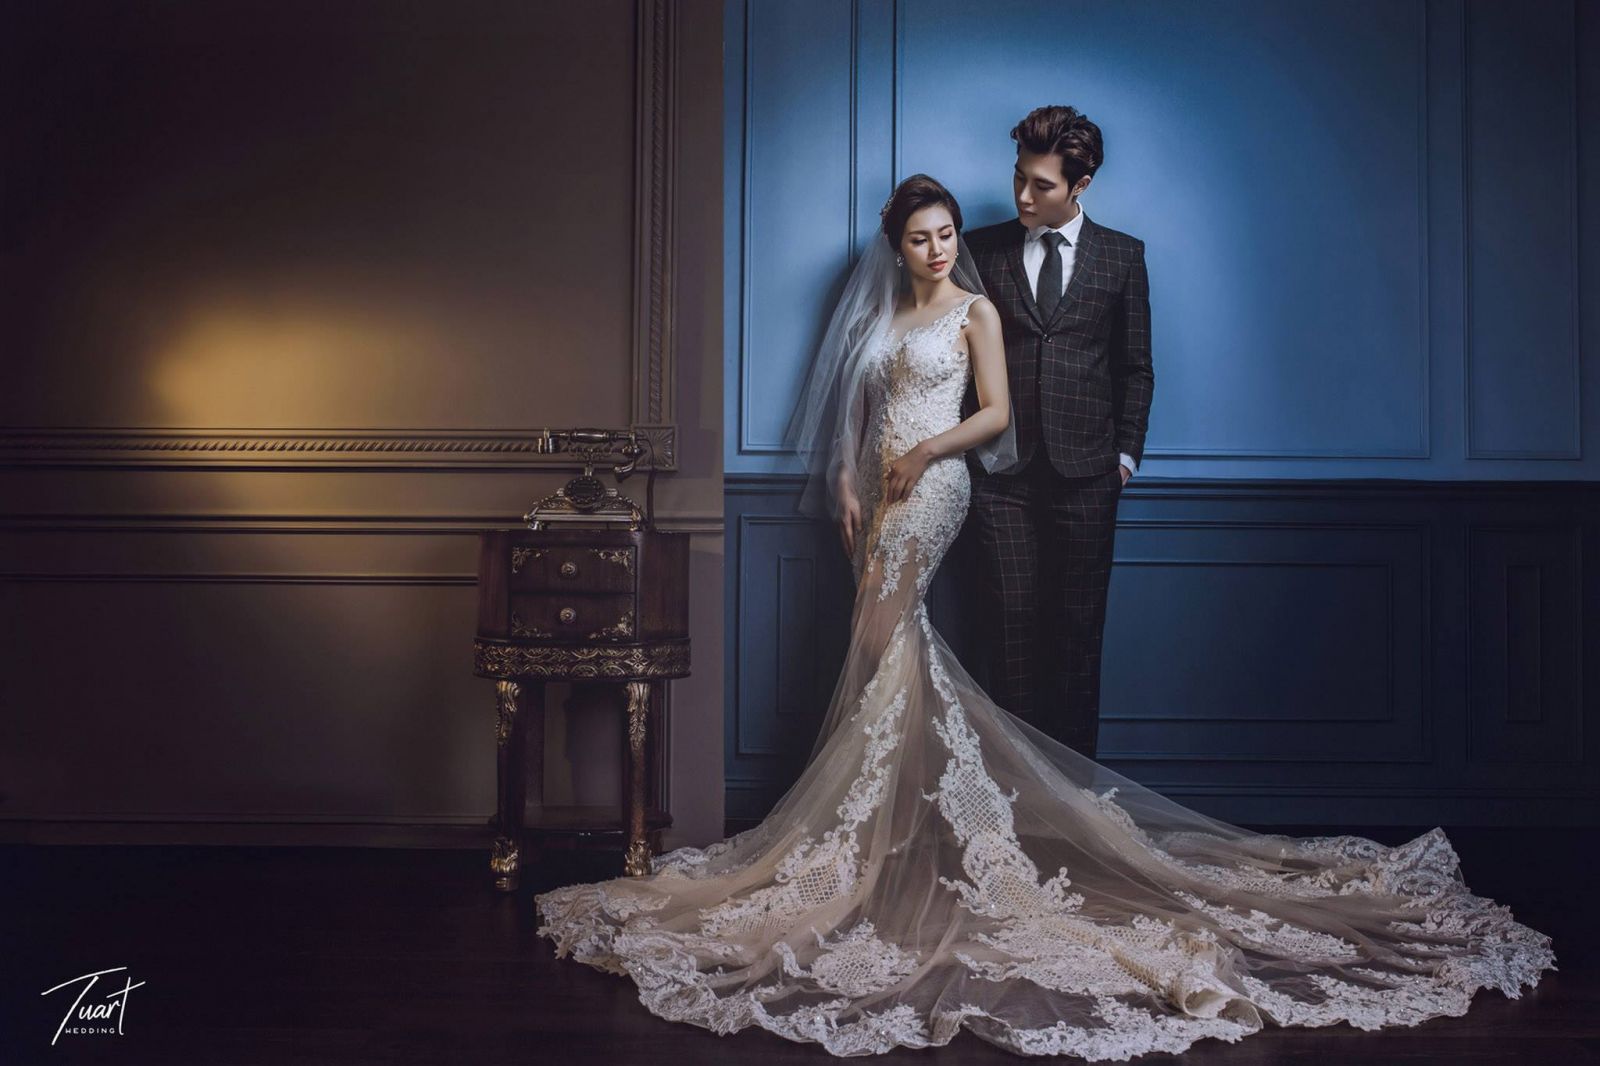  Sở hữu bộ ảnh cưới style Hàn Quốc chỉ từ 5.500.000 VND 1